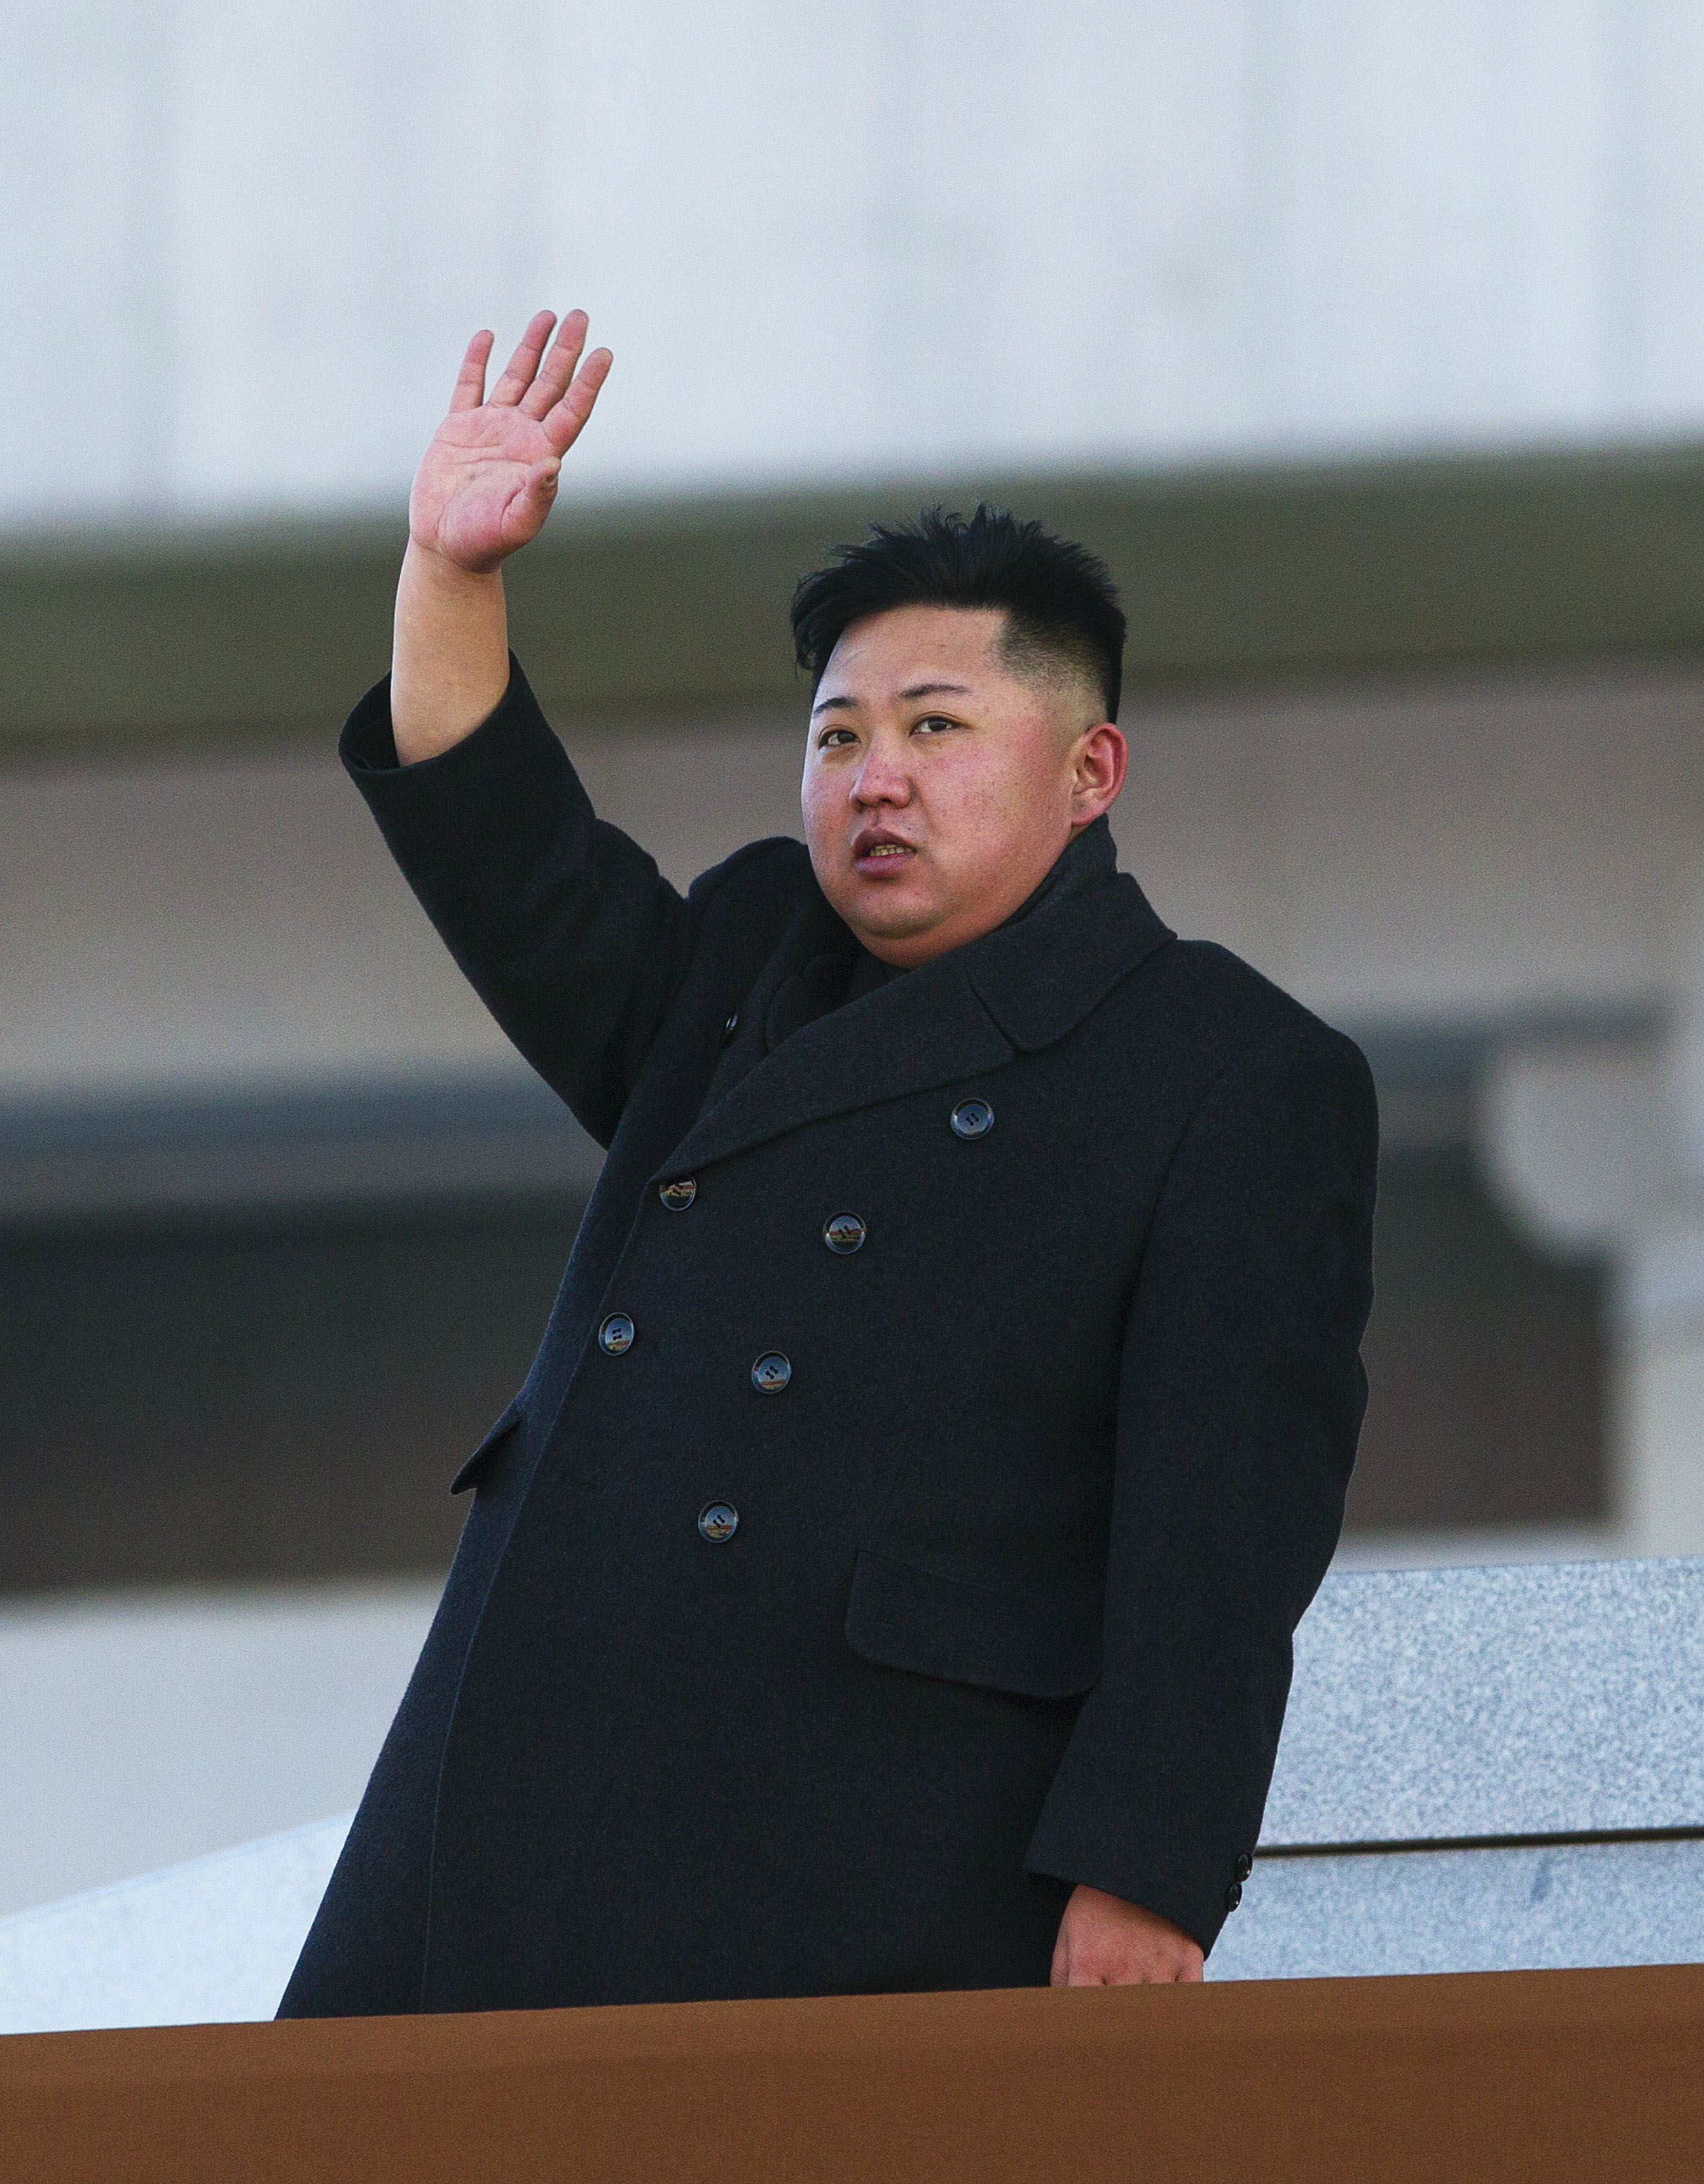 Kim Jong Un tog under 2011 över efter sin far Kim Jong Il men det har inte skett några förändringar i Nordkoreas inställning till nätet. Nyligen gjorde landet entré på internet genom ett propagandakrig mot USA och Sydkorea, hjälpta av en armé av hackare s